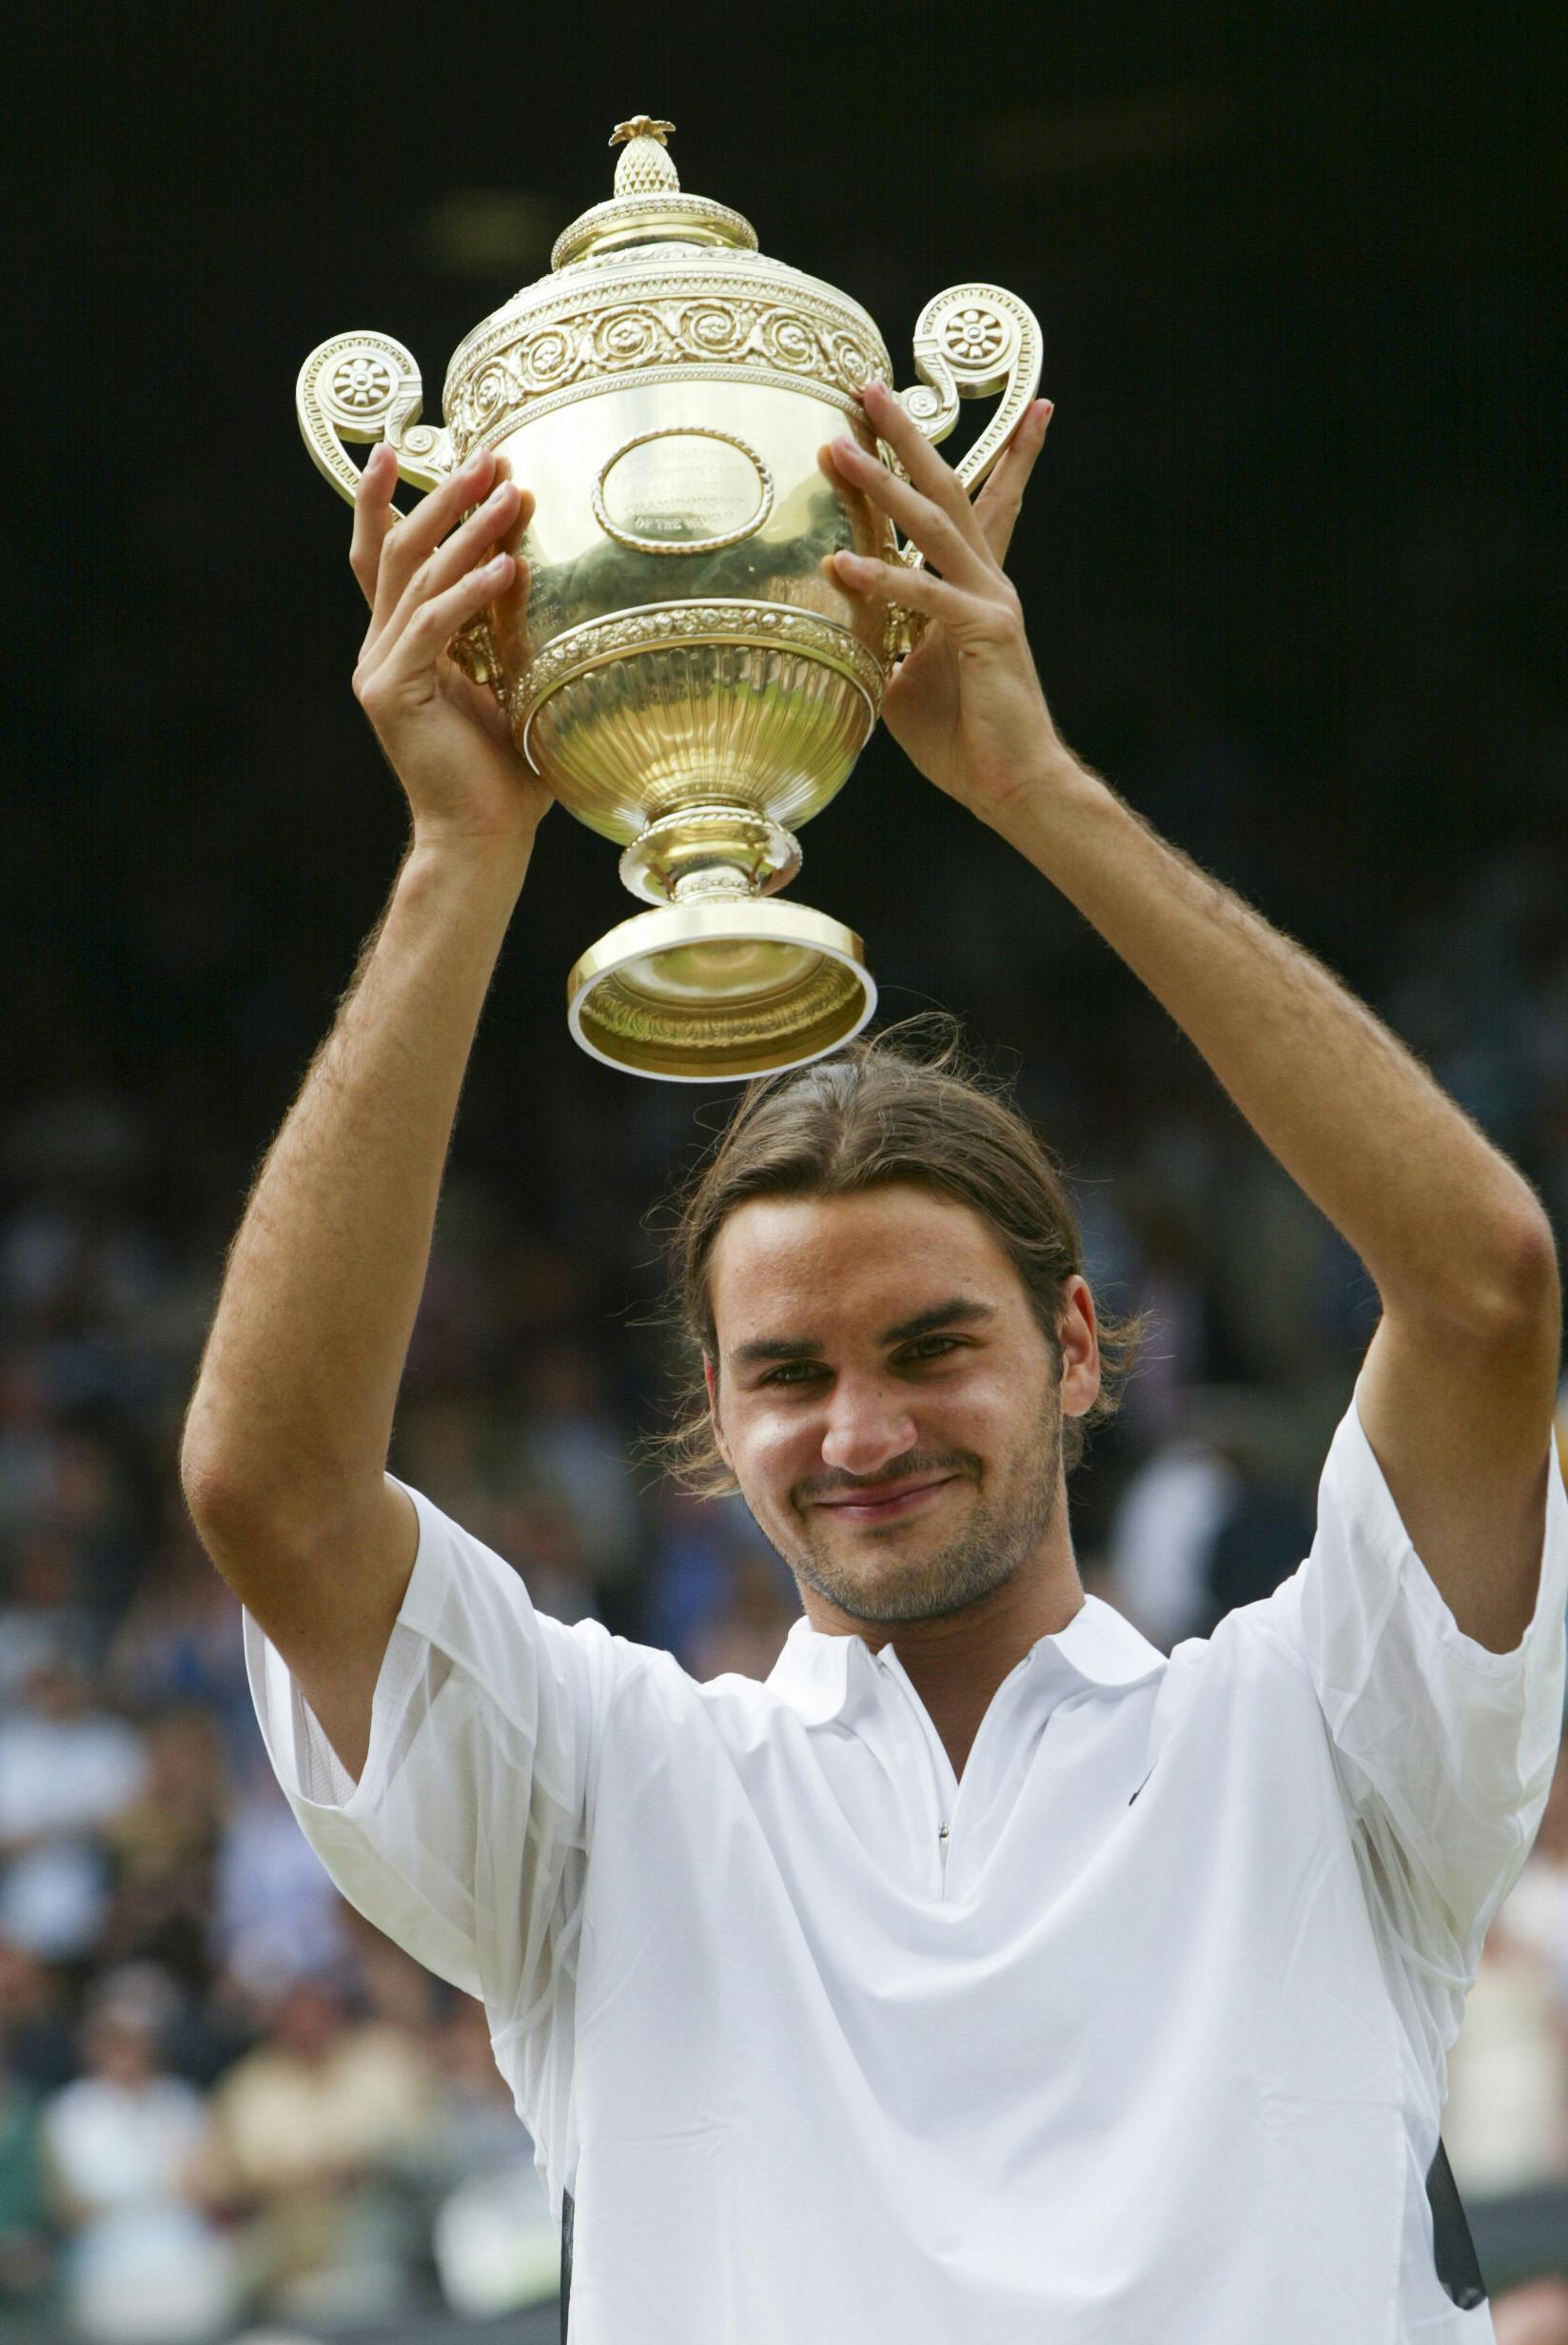 Roger Federer / Wimbledon 2003